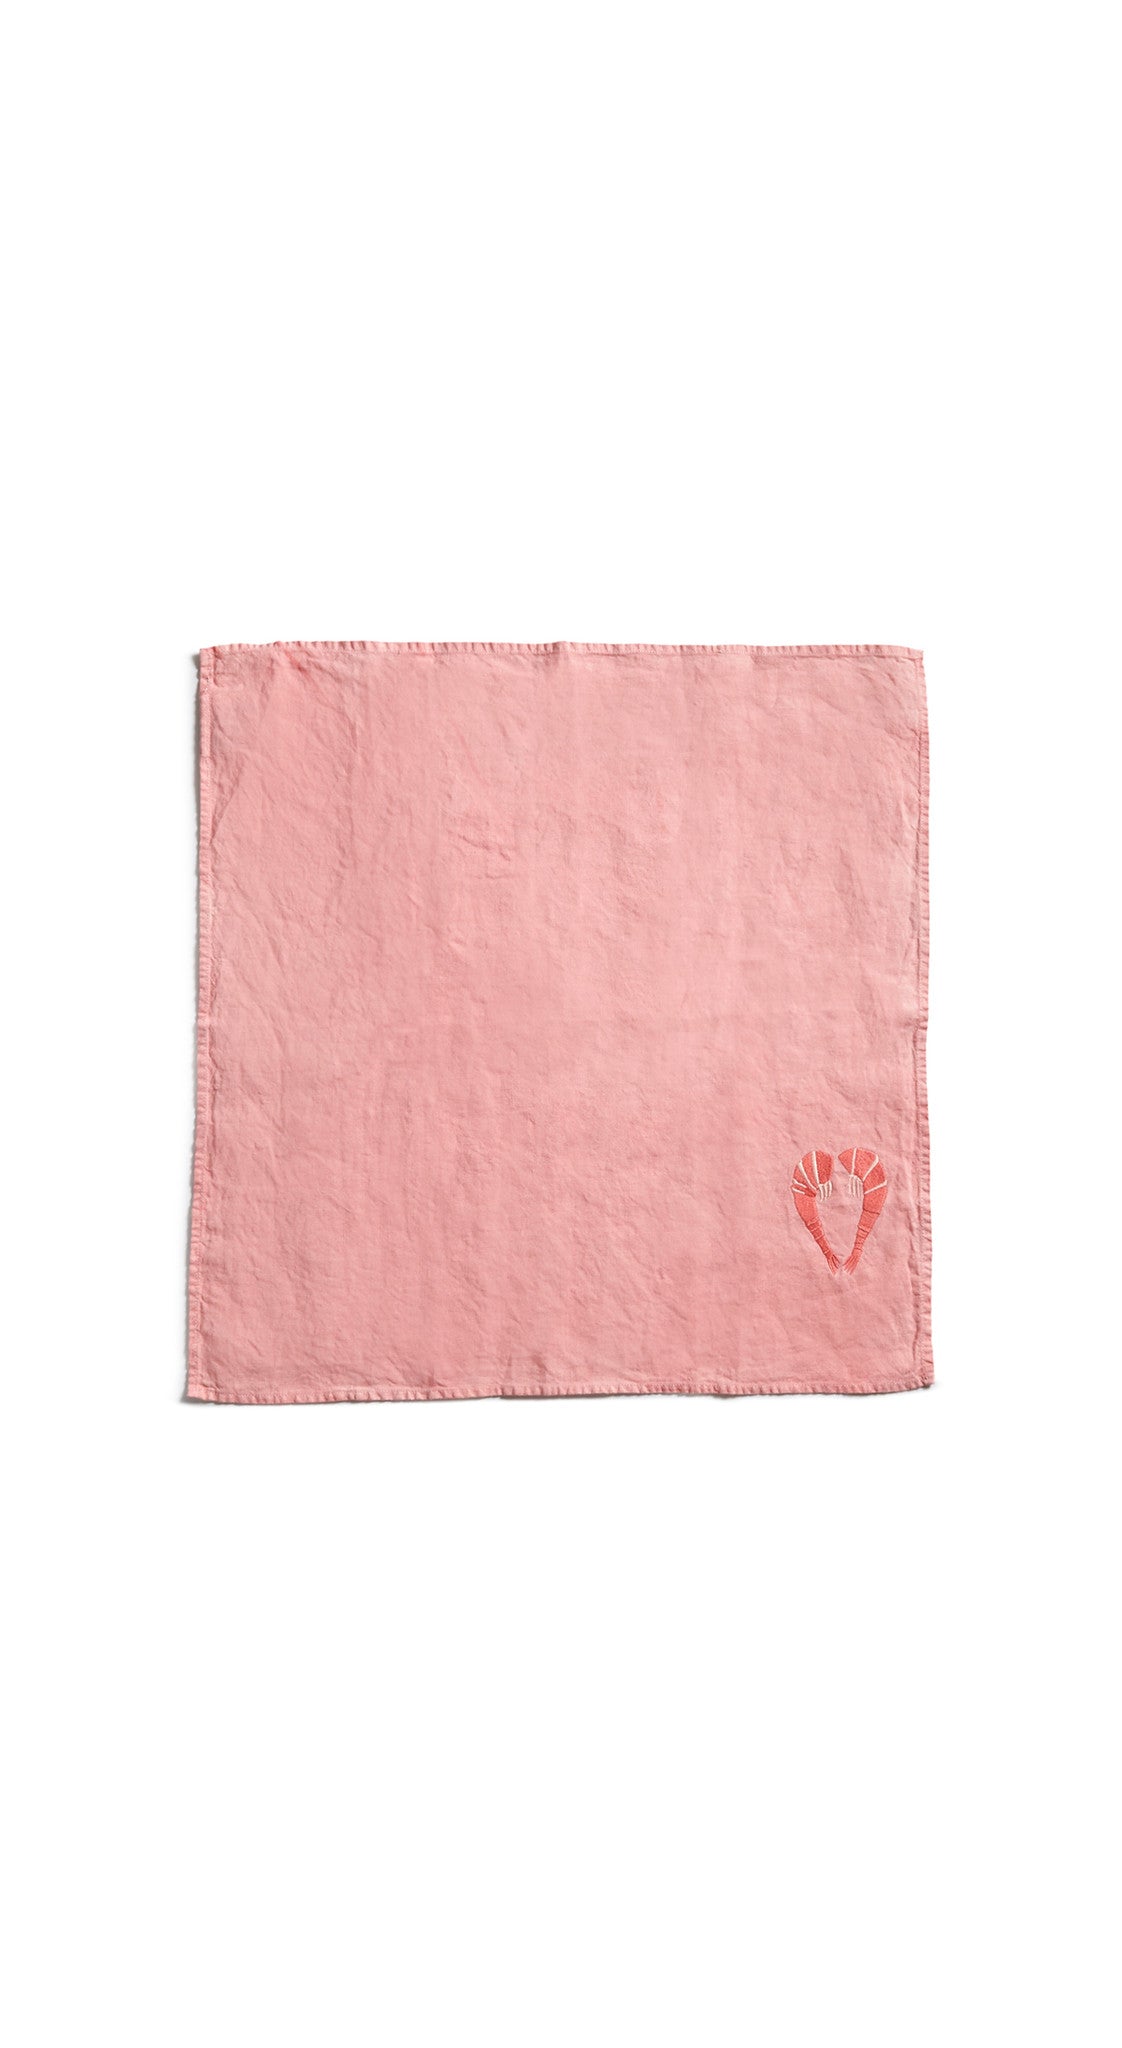 Summerill & Bishop x Shrimps Napkin in Powder Pink, 50x50cm